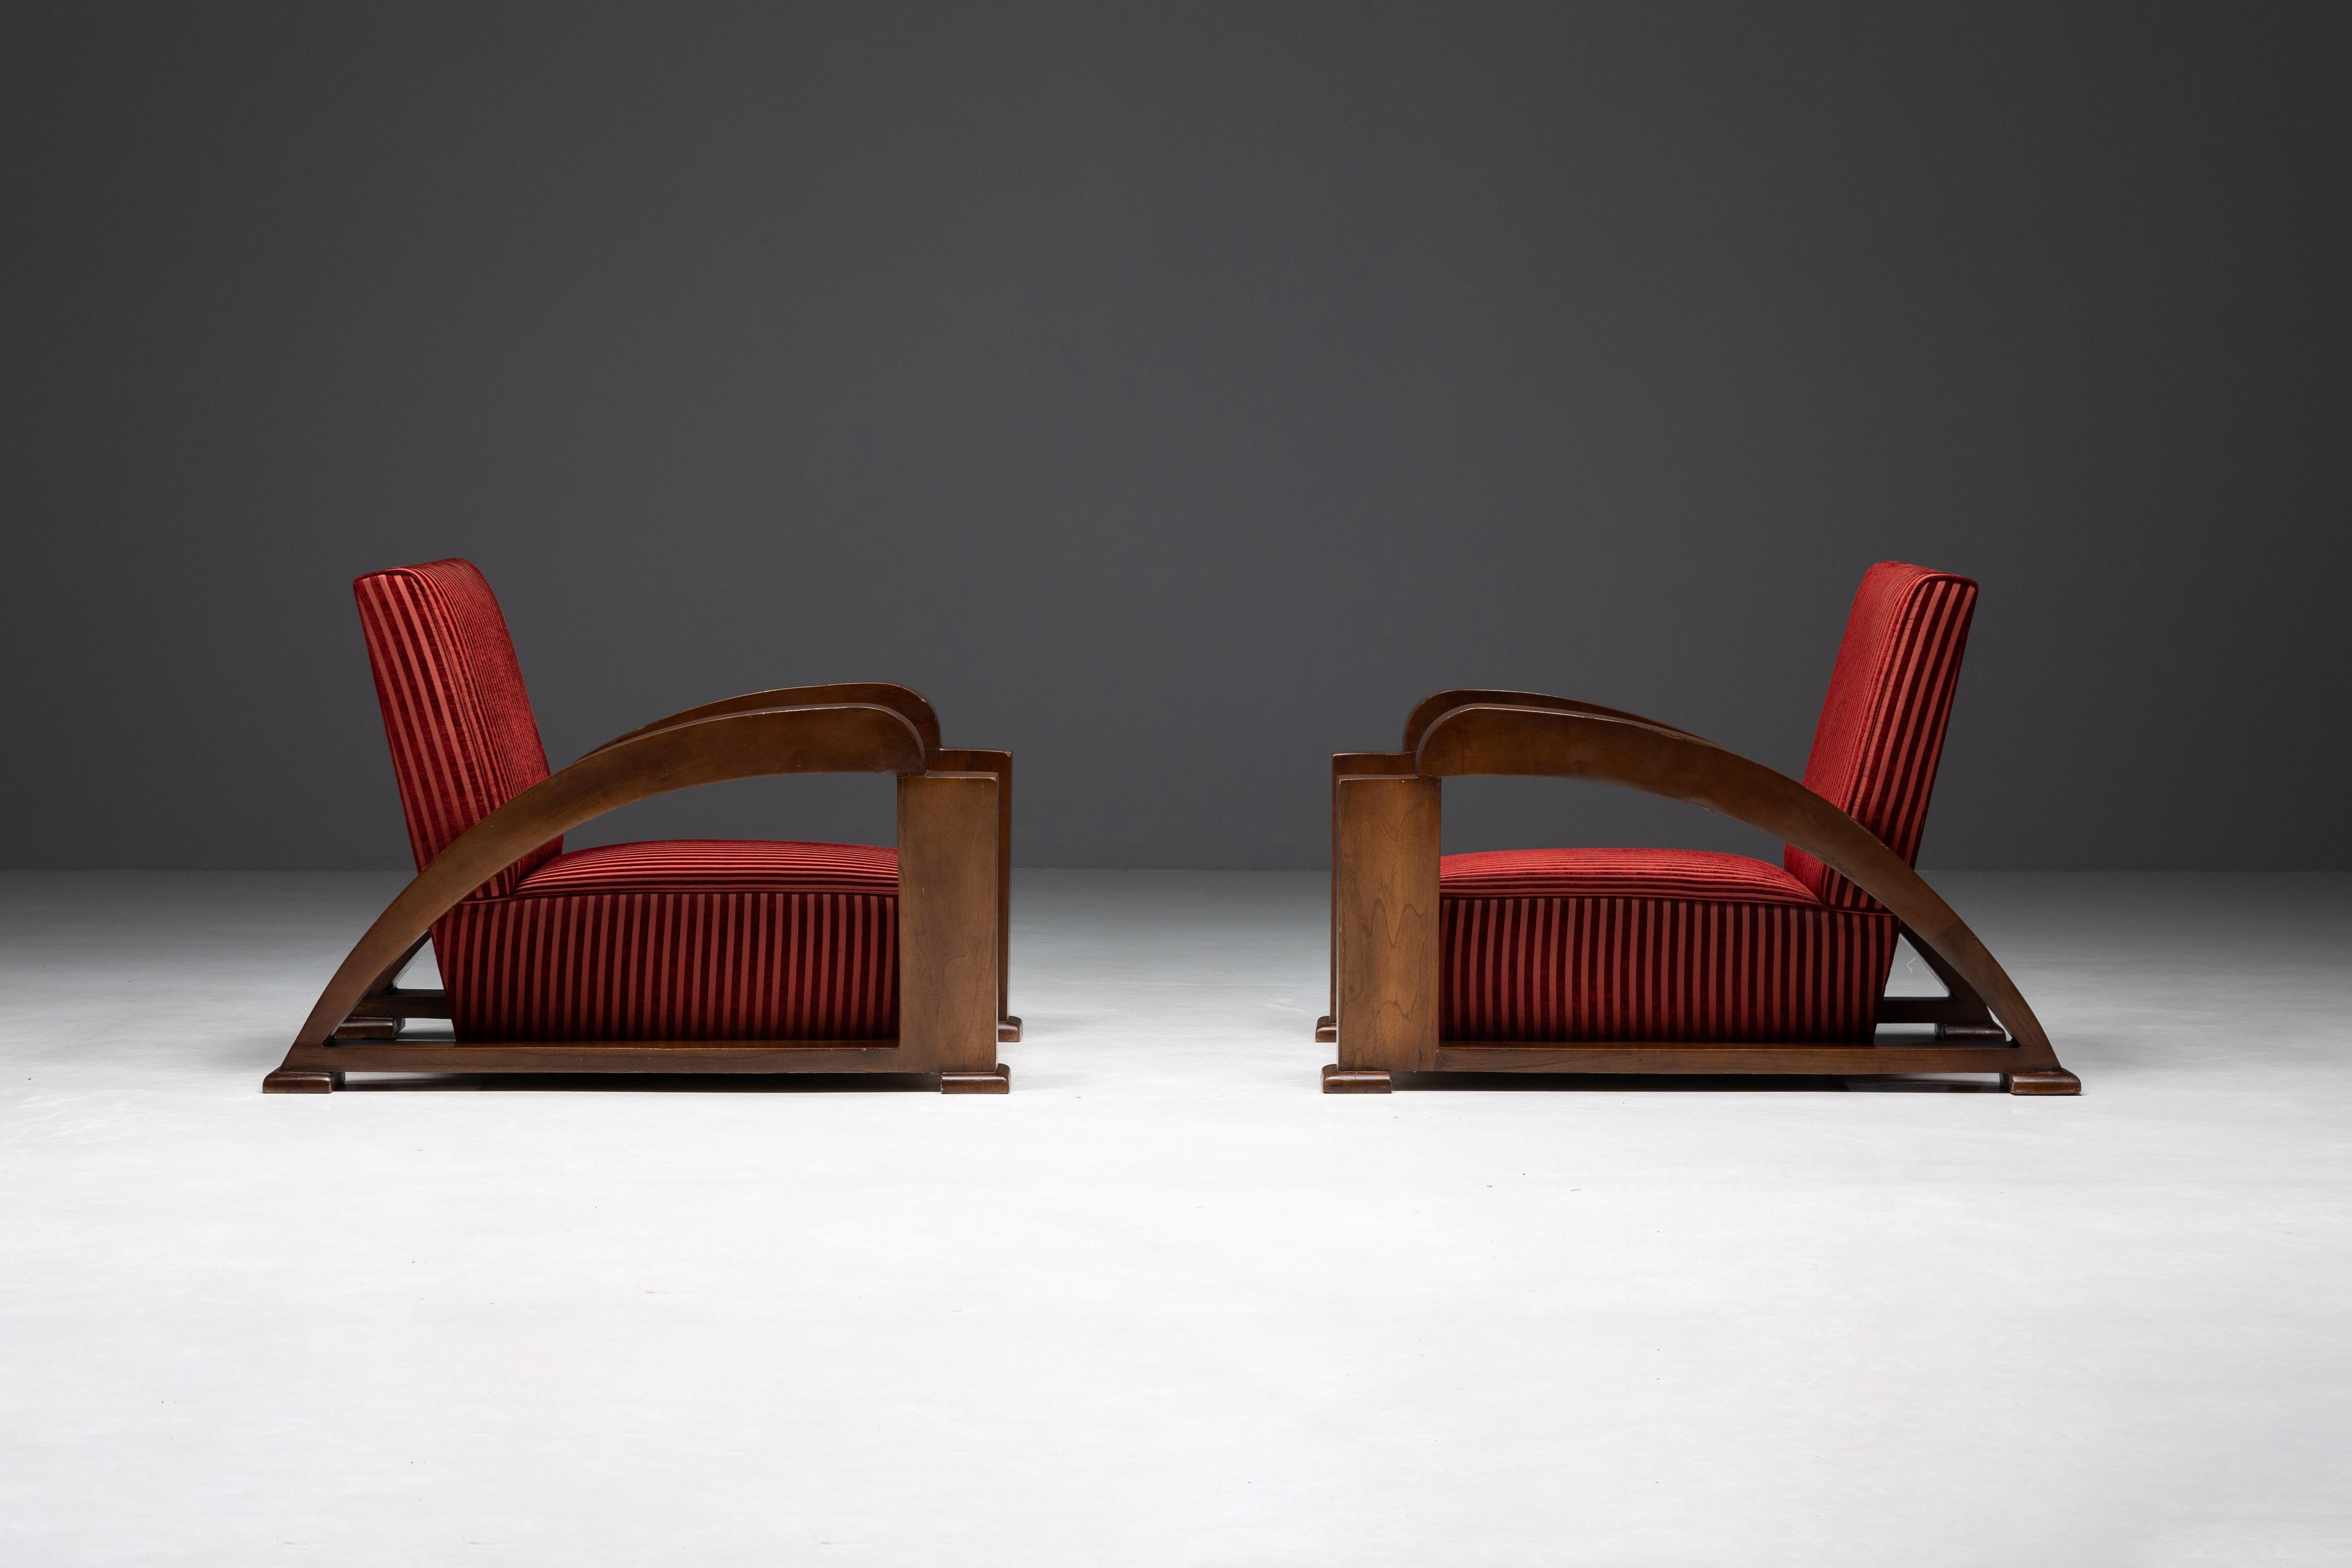 Ein Paar atemberaubender Art-Déco-Sessel, die die Raffinesse des frühen 20. Jahrhunderts verkörpern. Diese Loungesessel verfügen über anmutig geschwungene Armlehnen, die ihrer substanziellen Präsenz einen Hauch von Eleganz verleihen. Die mit